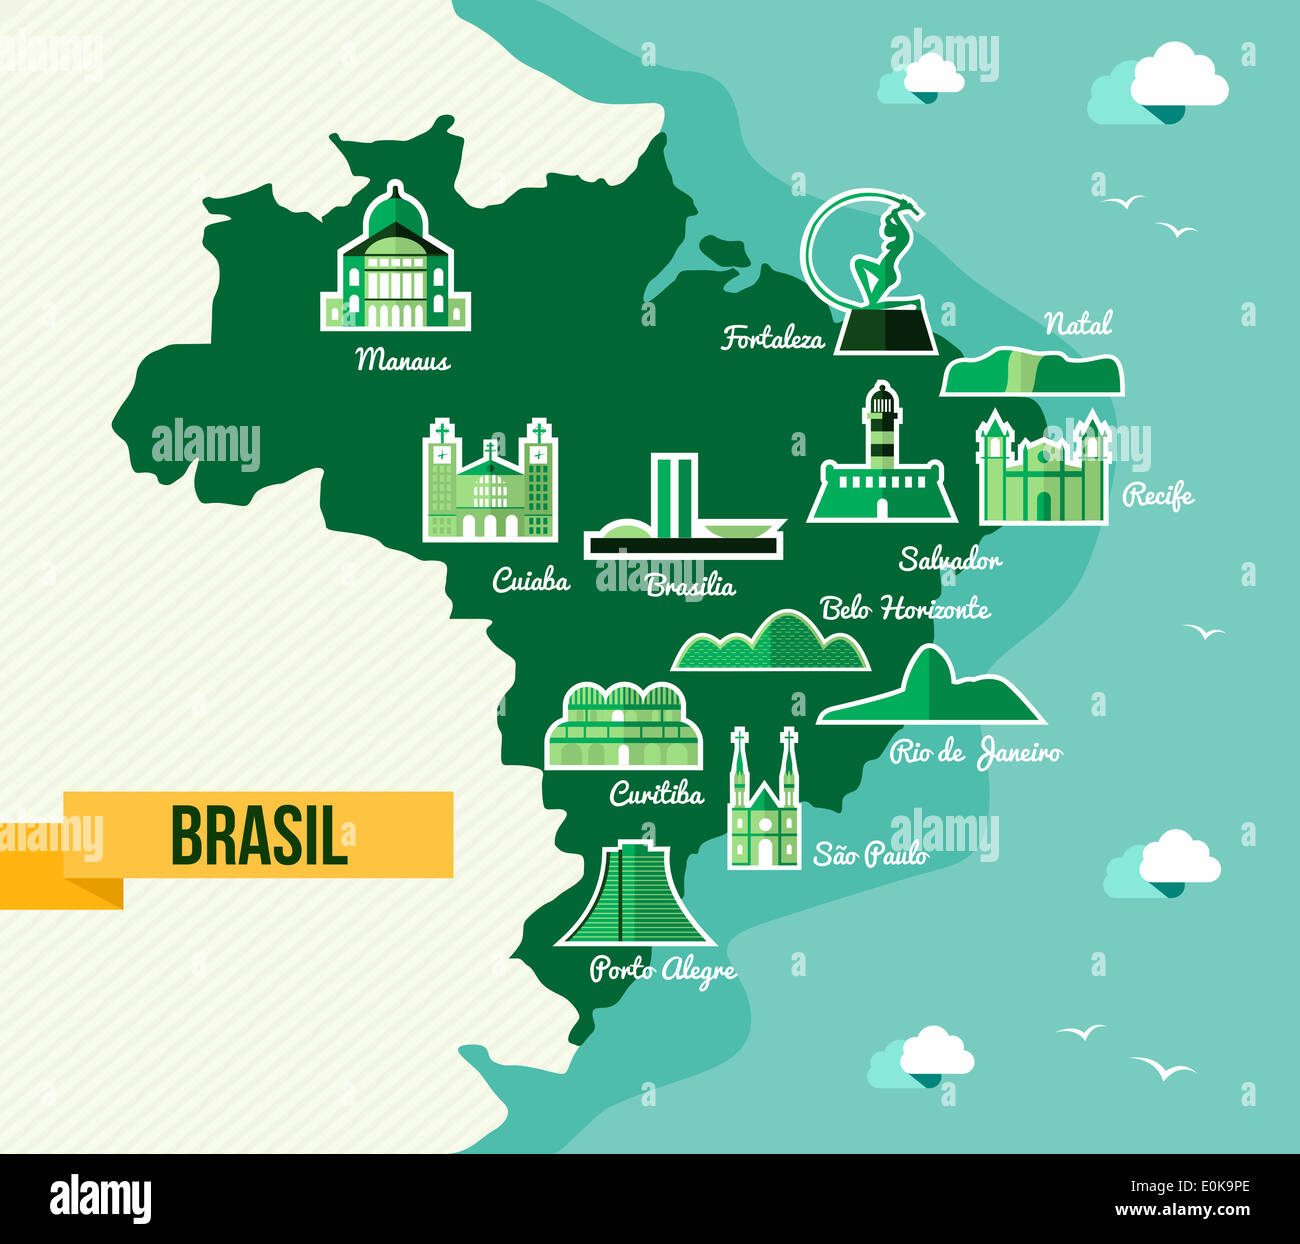 Fussball WM Brasilien Karte mit Wahrzeichen der Städte. EPS10 Vektor organisiert in Schichten für die einfache Bearbeitung. Stockfoto